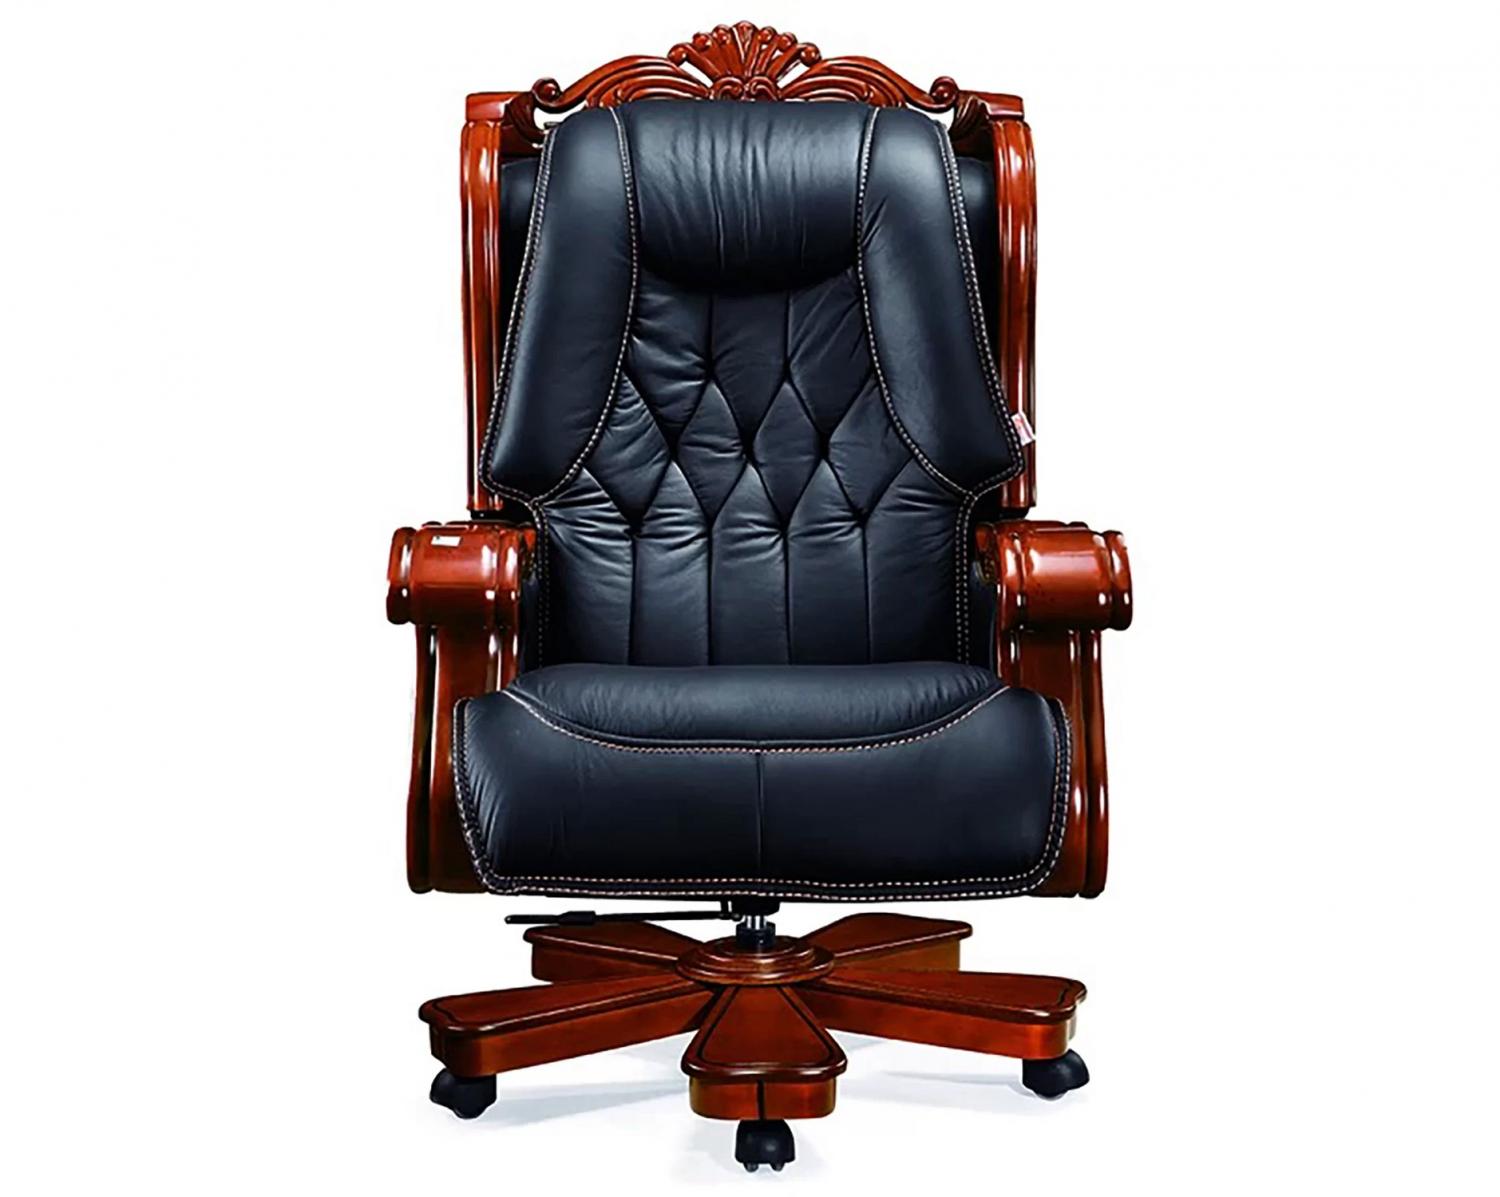 Black leather dark brown wooden chair